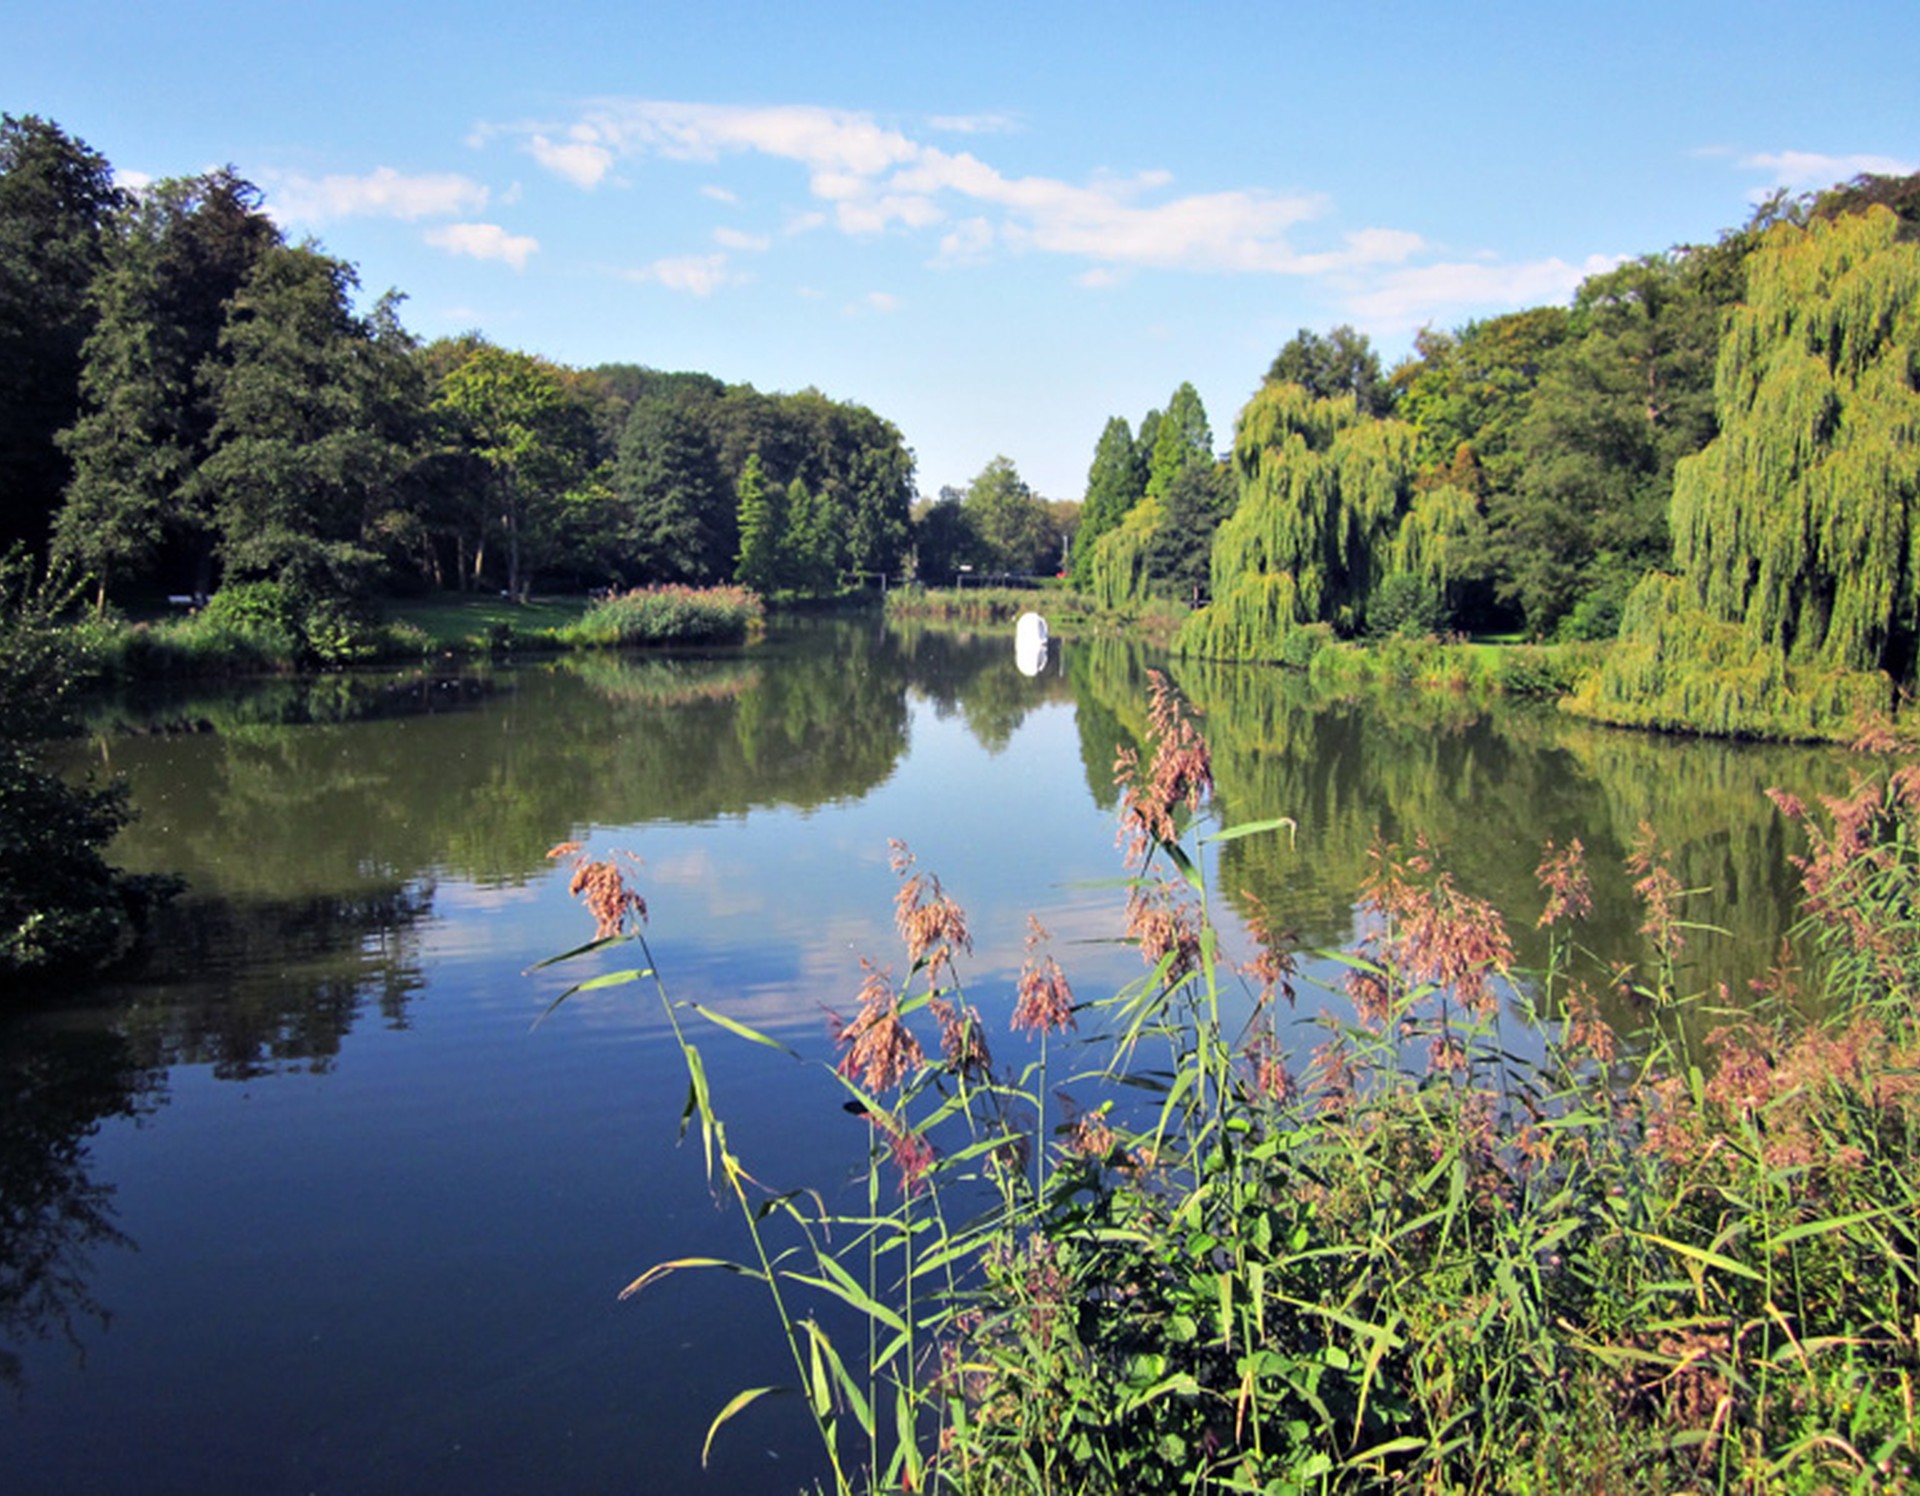 Teich des Kurparks Bad Hamm. Am Ufer rechts stehen einige Trauerweiden.